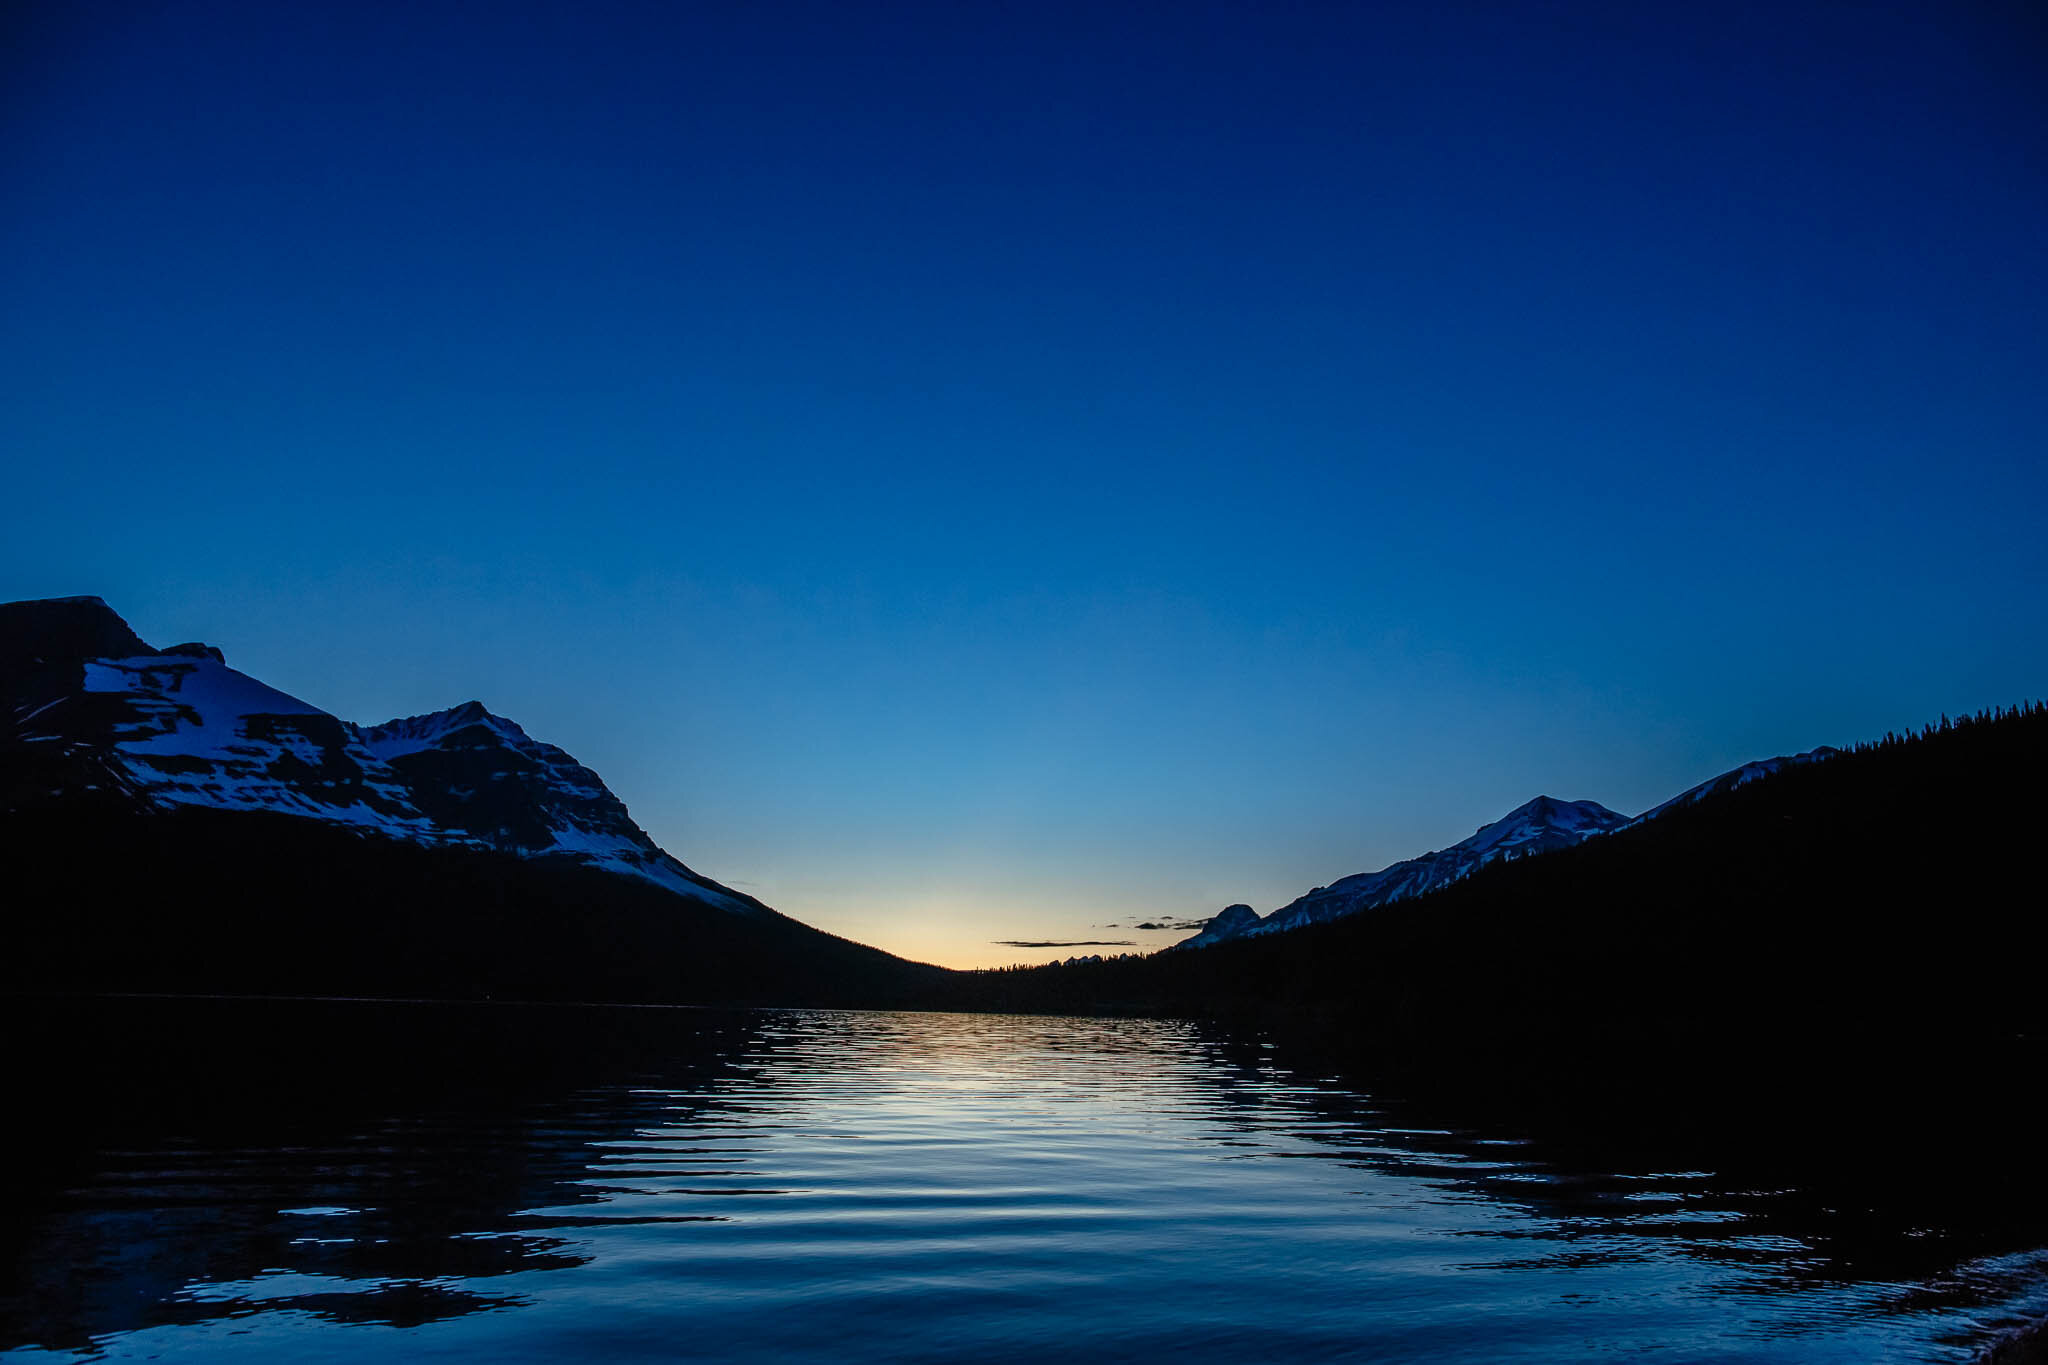 140622-Bow-Lake-Banff-105336-Edit.jpg